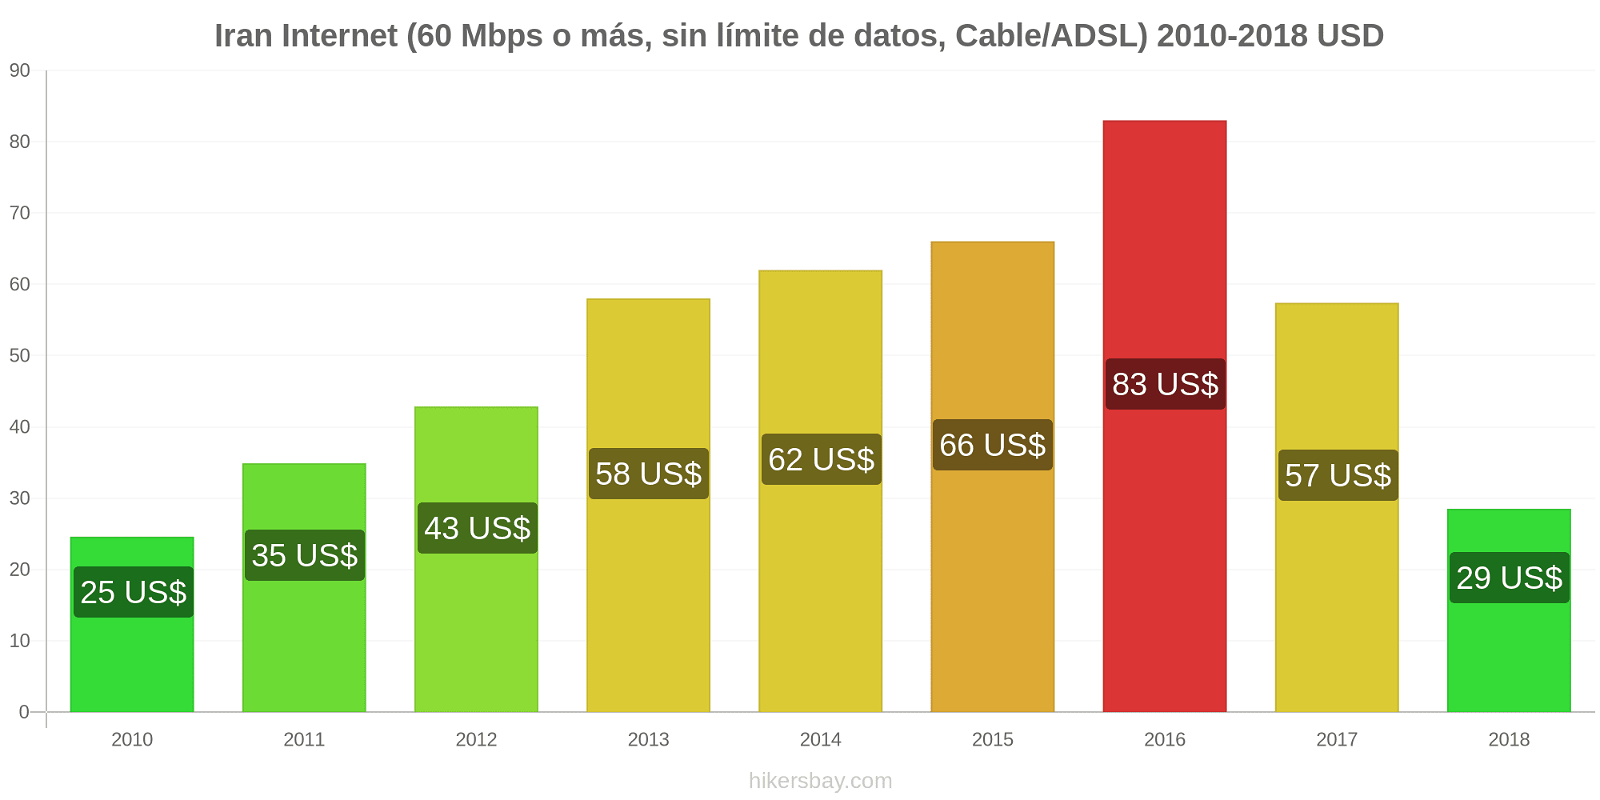 Iran cambios de precios Internet (60 Mbps o más, datos ilimitados, cable/ADSL) hikersbay.com